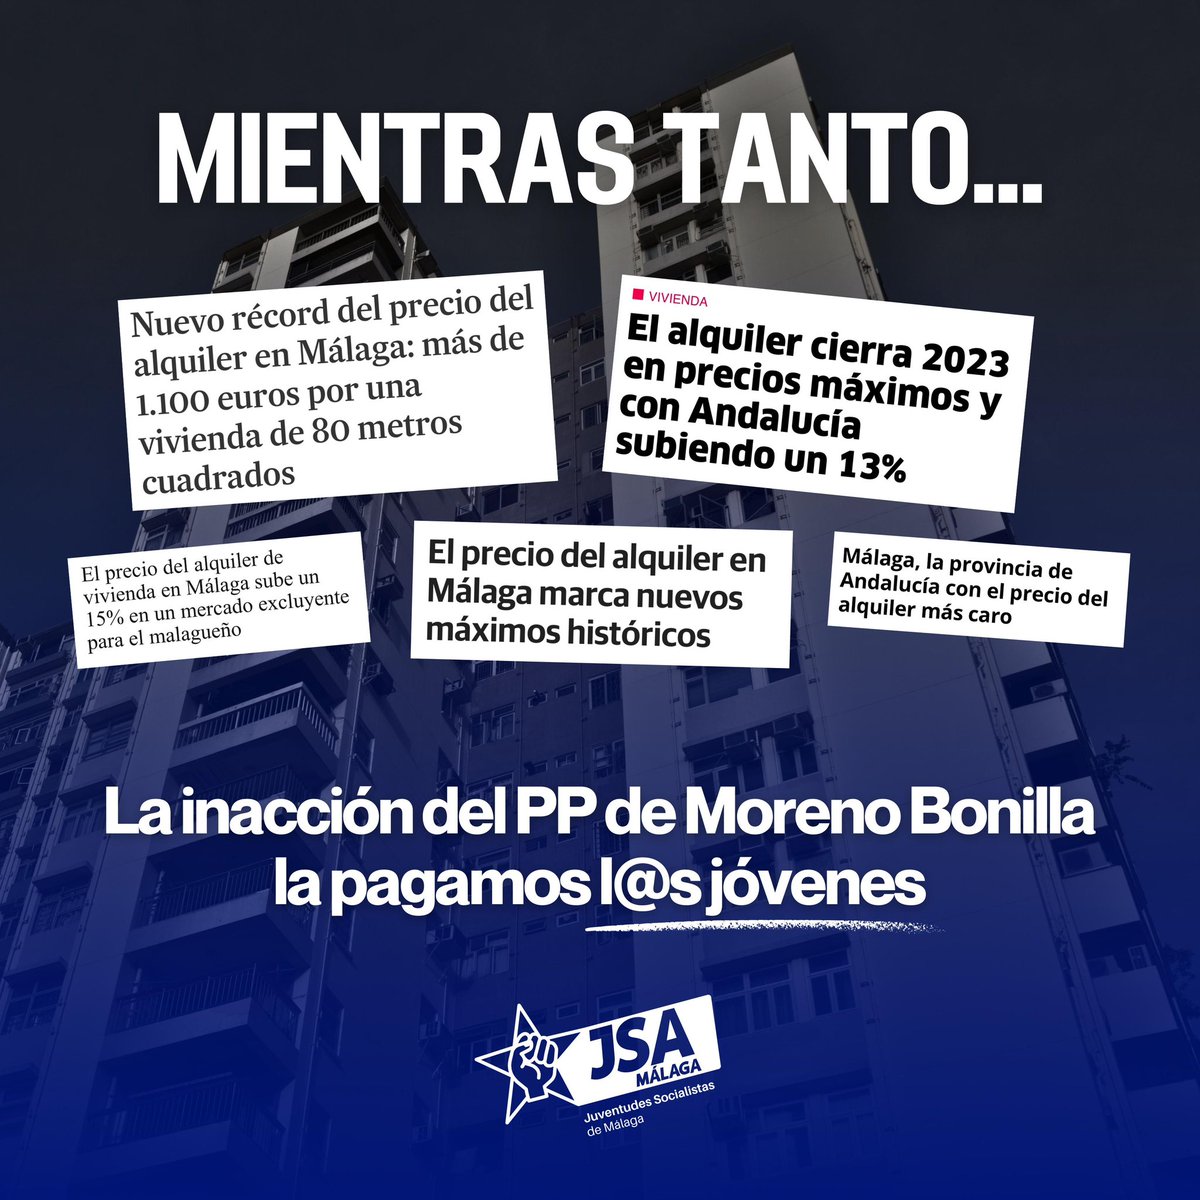 💥El desastre del #BonoAlquilerJoven en Andalucía continúa💥 👉2 años después de su aprobación, el @ppandaluz solo ha resuelto el 65% de las solicitudes de 2022, sin haber rastro de las de 2023. ❌La nefasta gestión de Moreno Bonilla la pagamos l@s jóvenes.